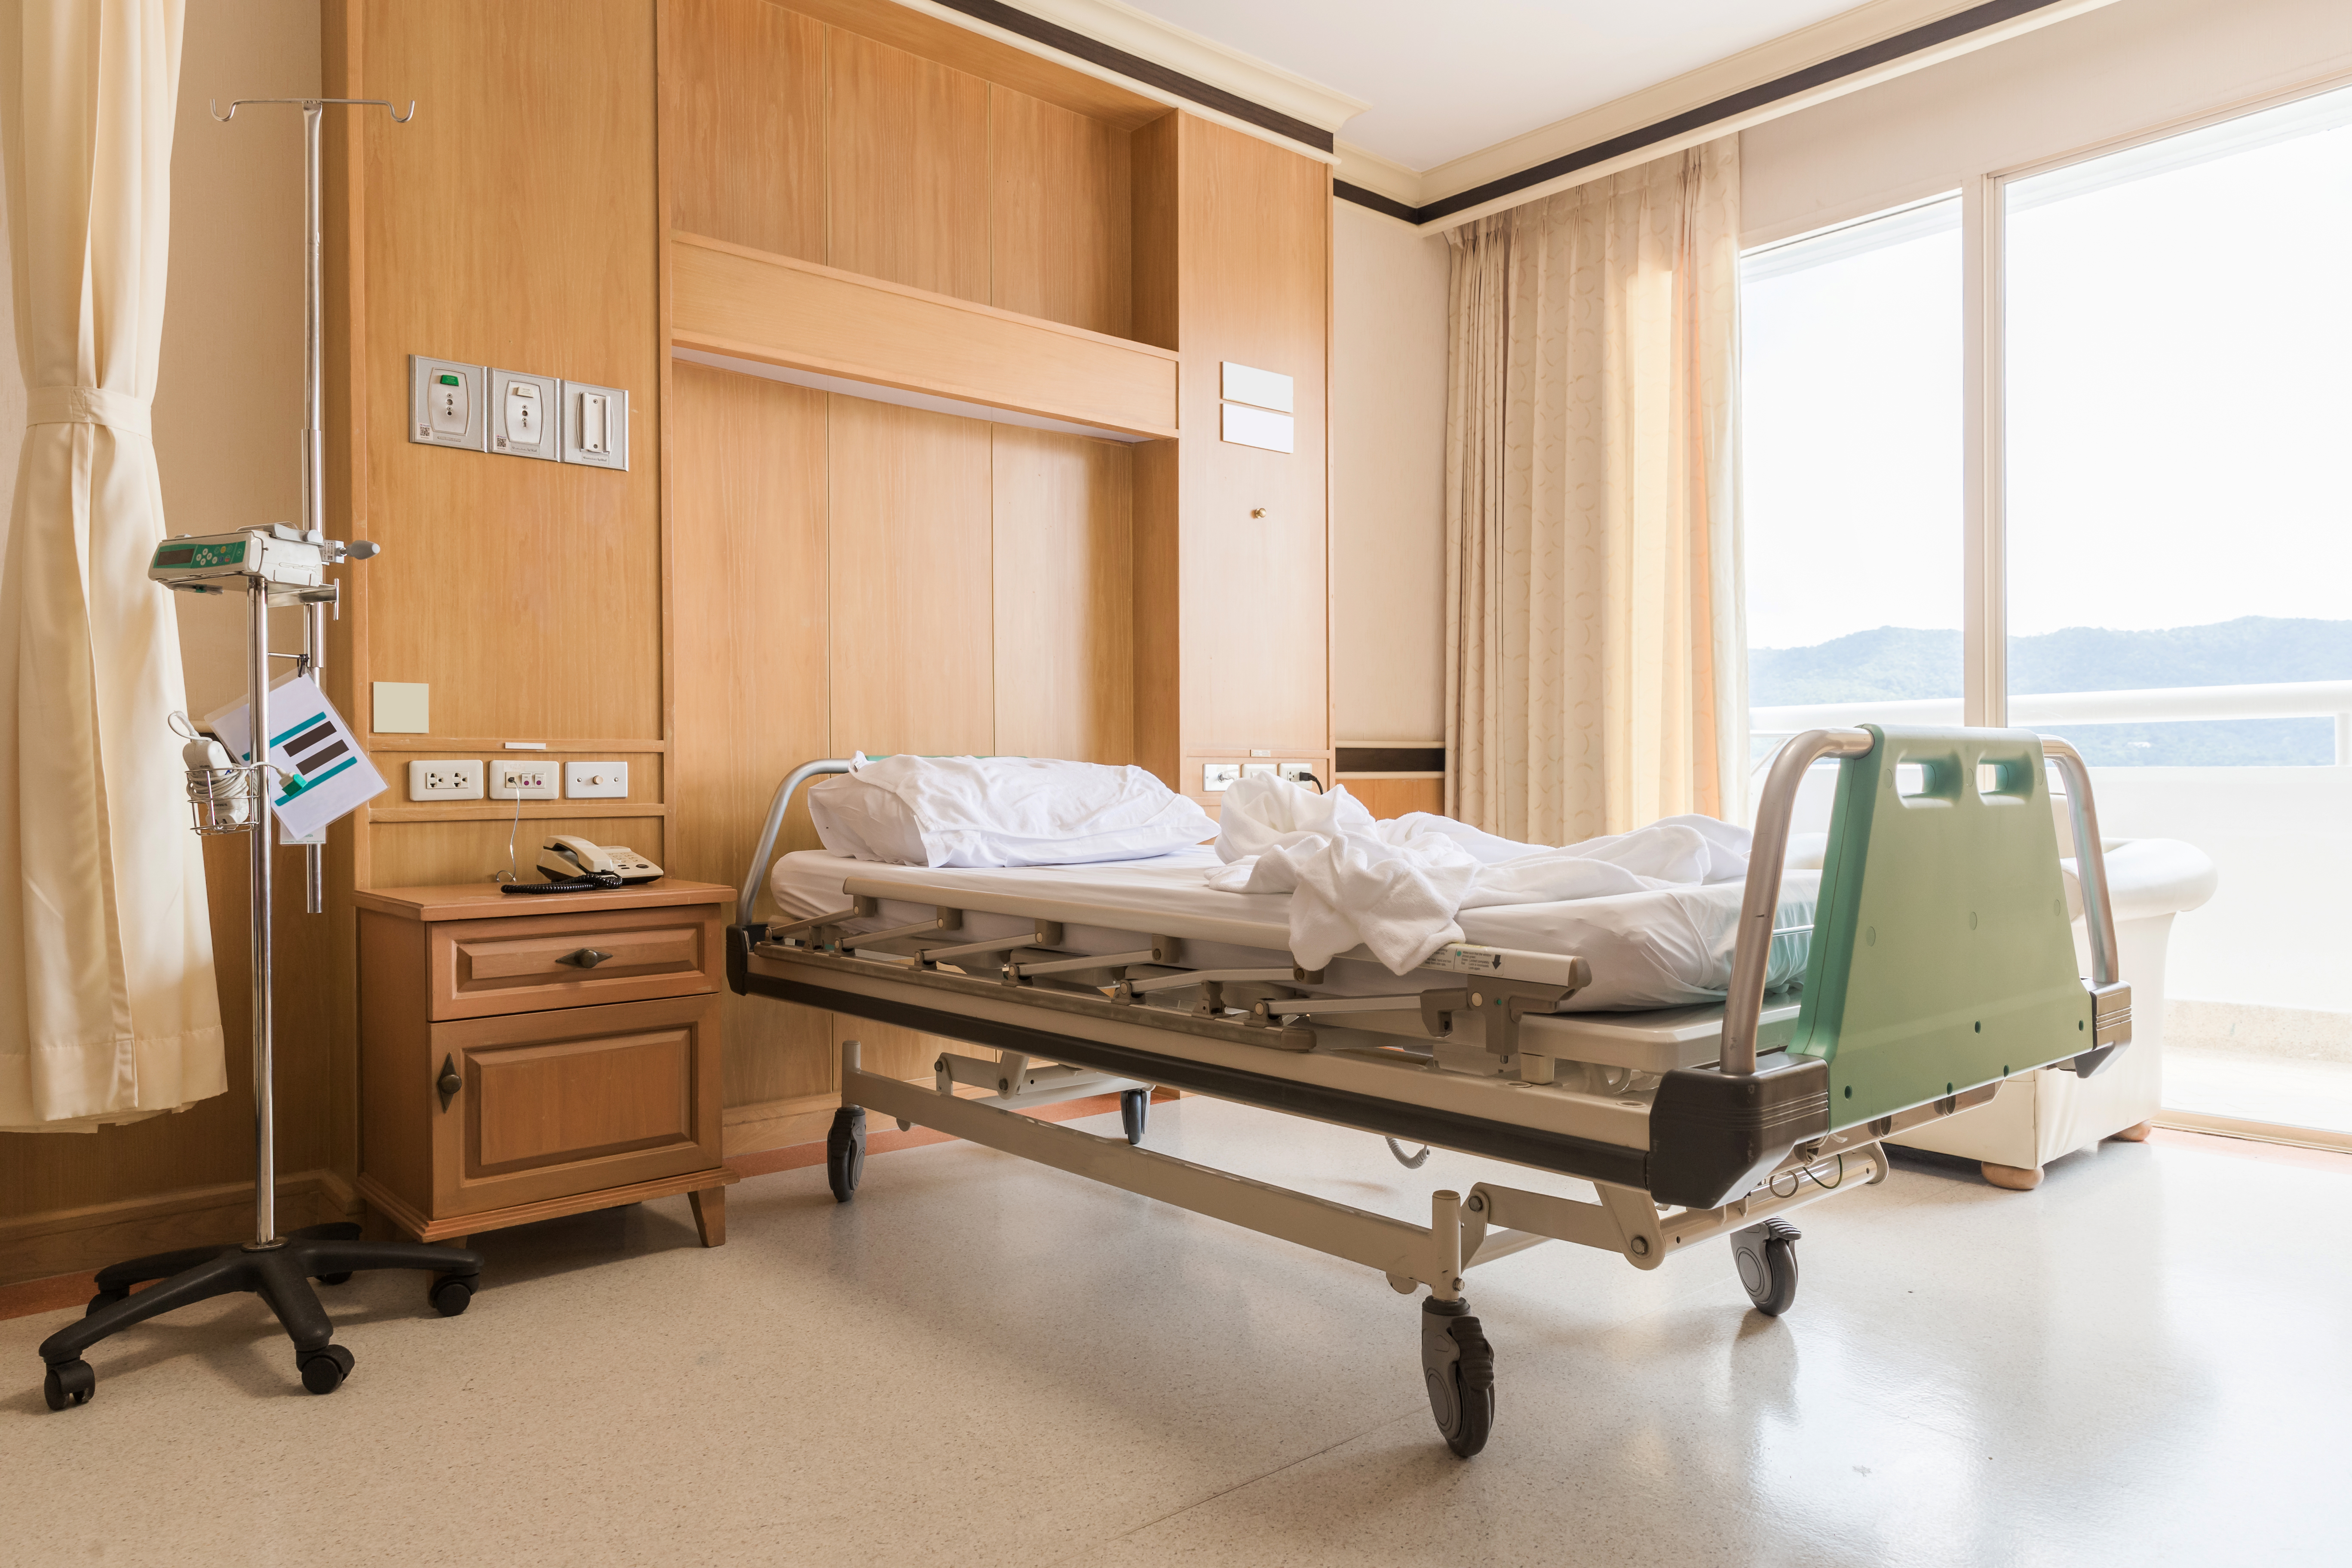 Interior de una habitación de hospital vacía | Fuente: Shutterstock